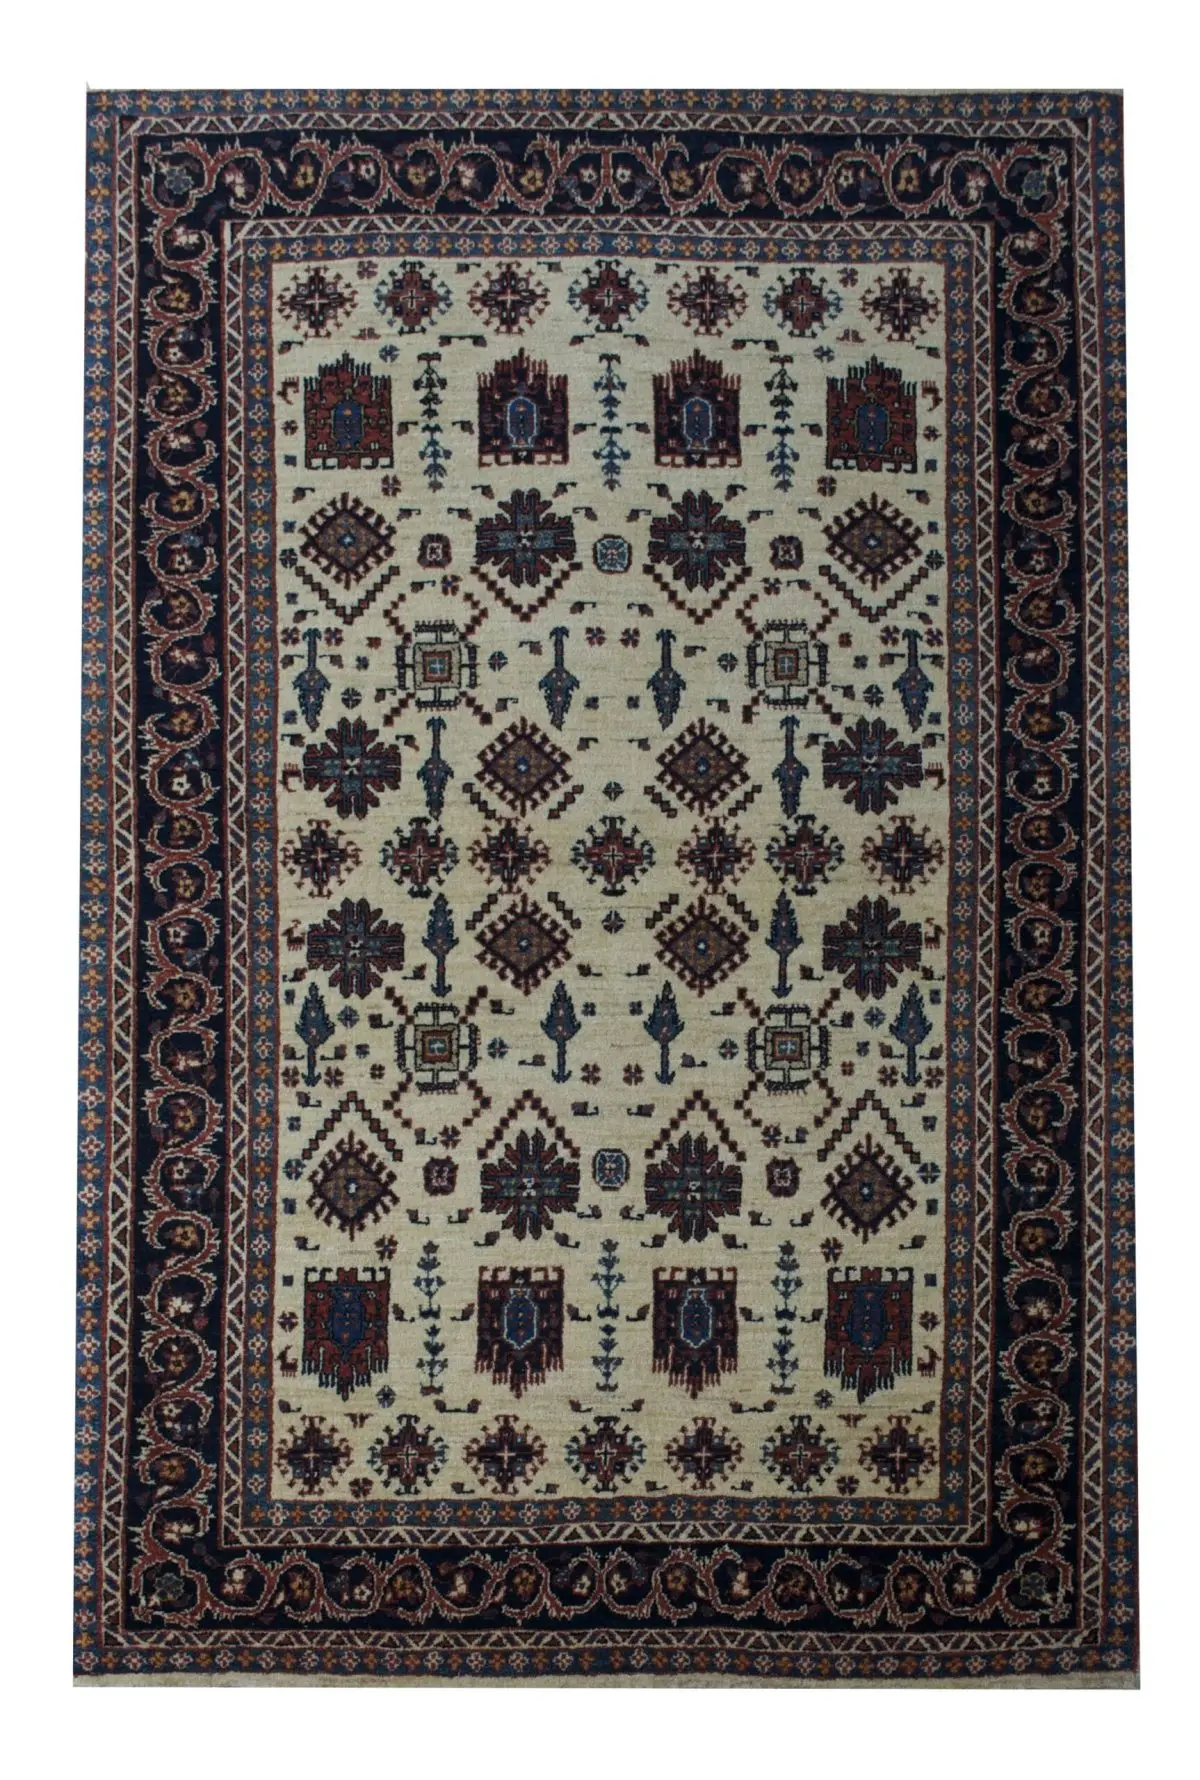 Persian Gabbeh 3' 6" x 5' 4" Wool Handmade Area Rug - Shabahang Royal Carpet